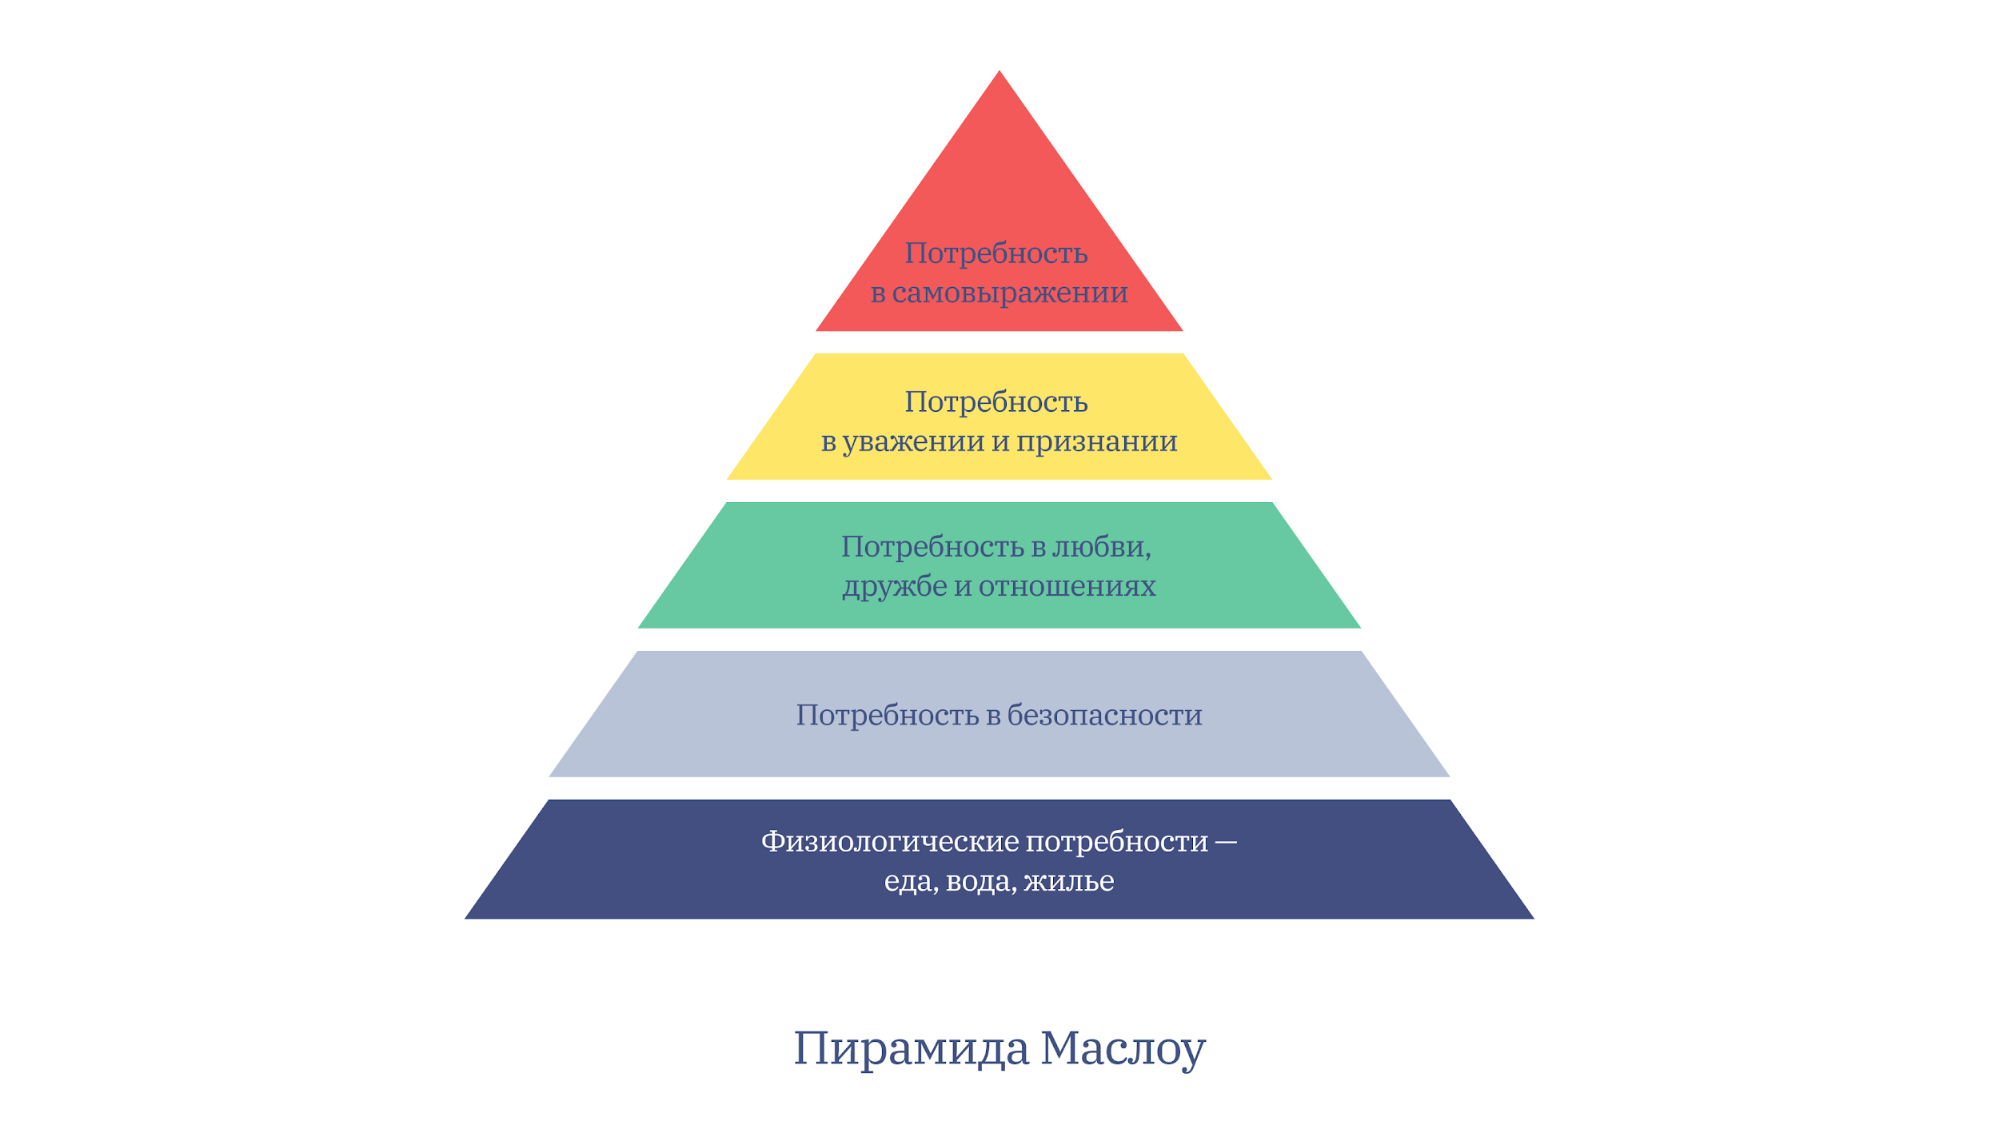 Определенных потребностей и проектов. 5 Ступеней Маслоу. Таблица потребностей Маслоу. Пирамида плтребностеймасдоу. Абрахам Маслоу потребности.